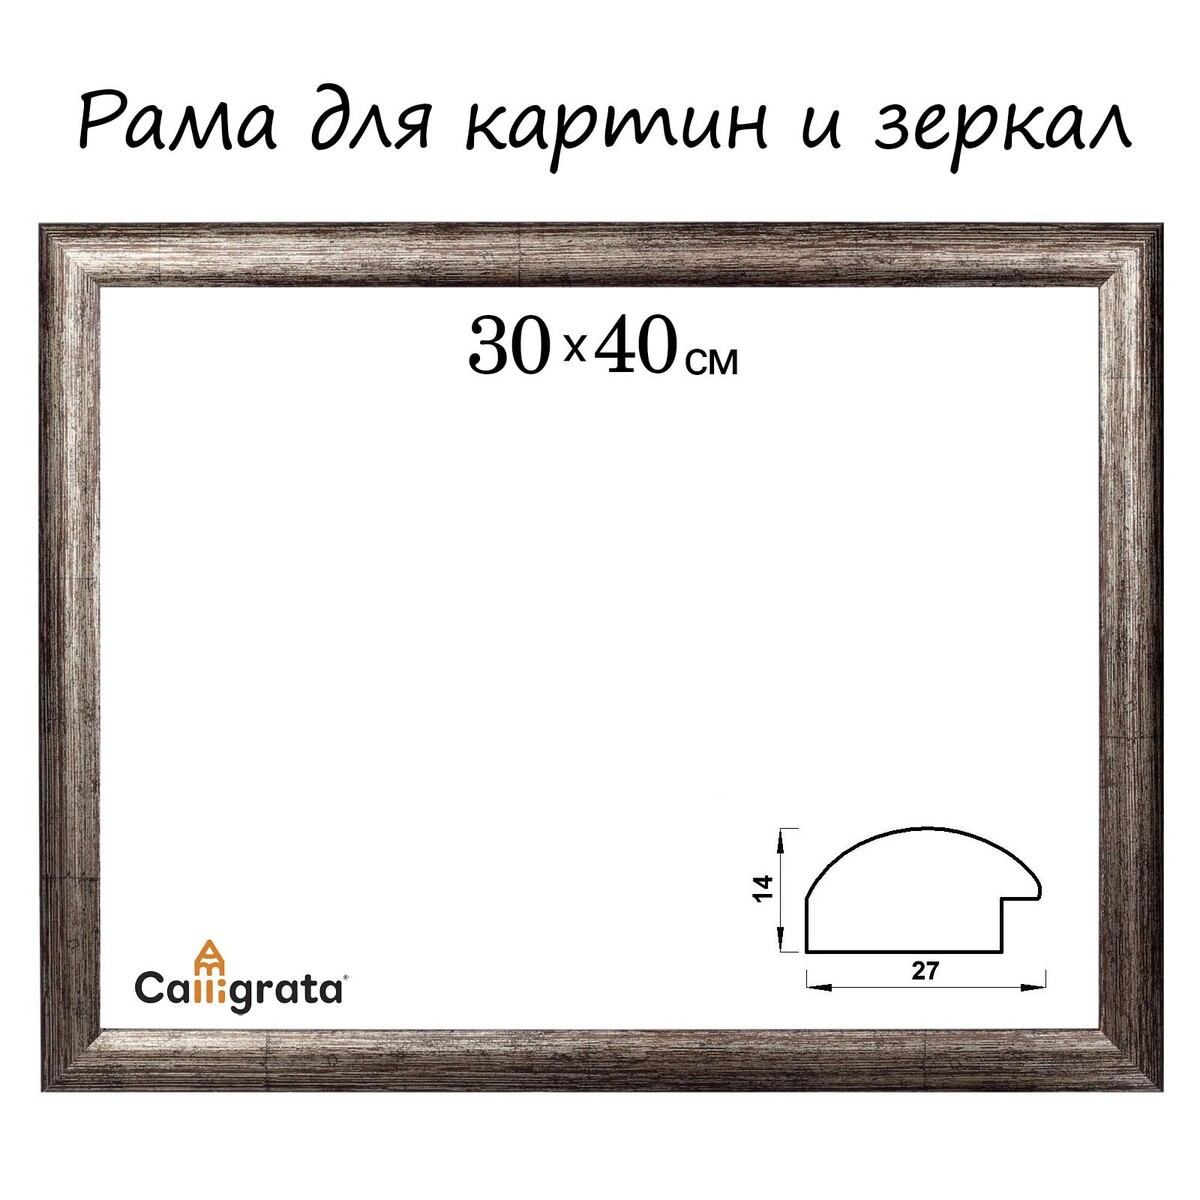 Рама для картин (зеркал) 30 х 40 х 2,7 см, пластиковая, calligrata 6472, цвет коричневая-серая рама для жимов и приседов hasttings digger hd010 5